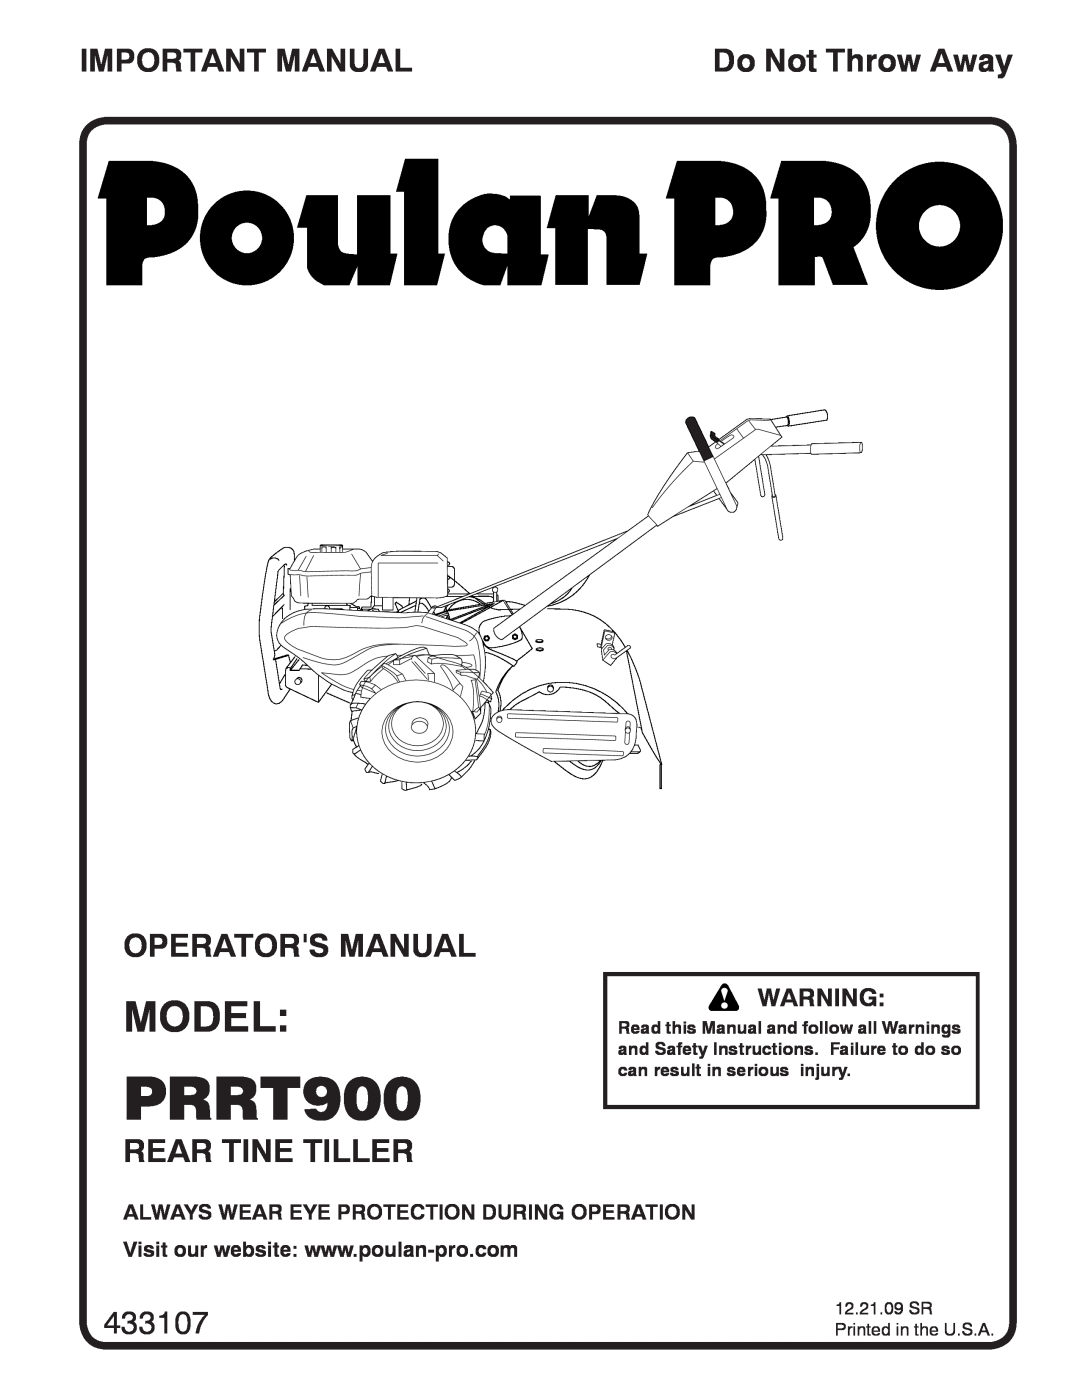 Poulan 96092002200 manual Model, Important Manual, Operators Manual, Rear Tine Tiller, 433107, Do Not Throw Away, PRRT900 